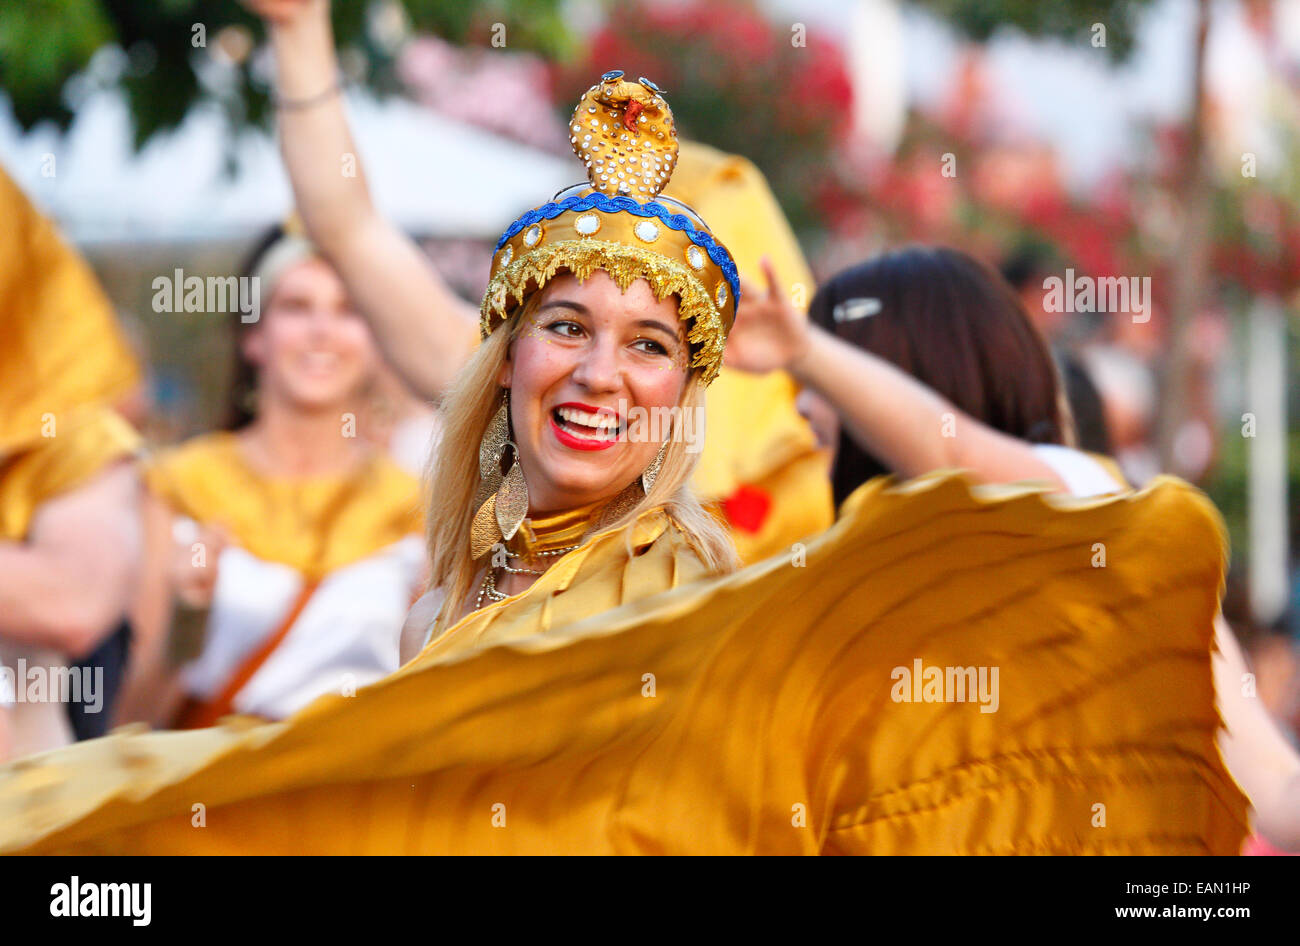 Carnival at Novi Vinodolski, Croatia Stock Photo